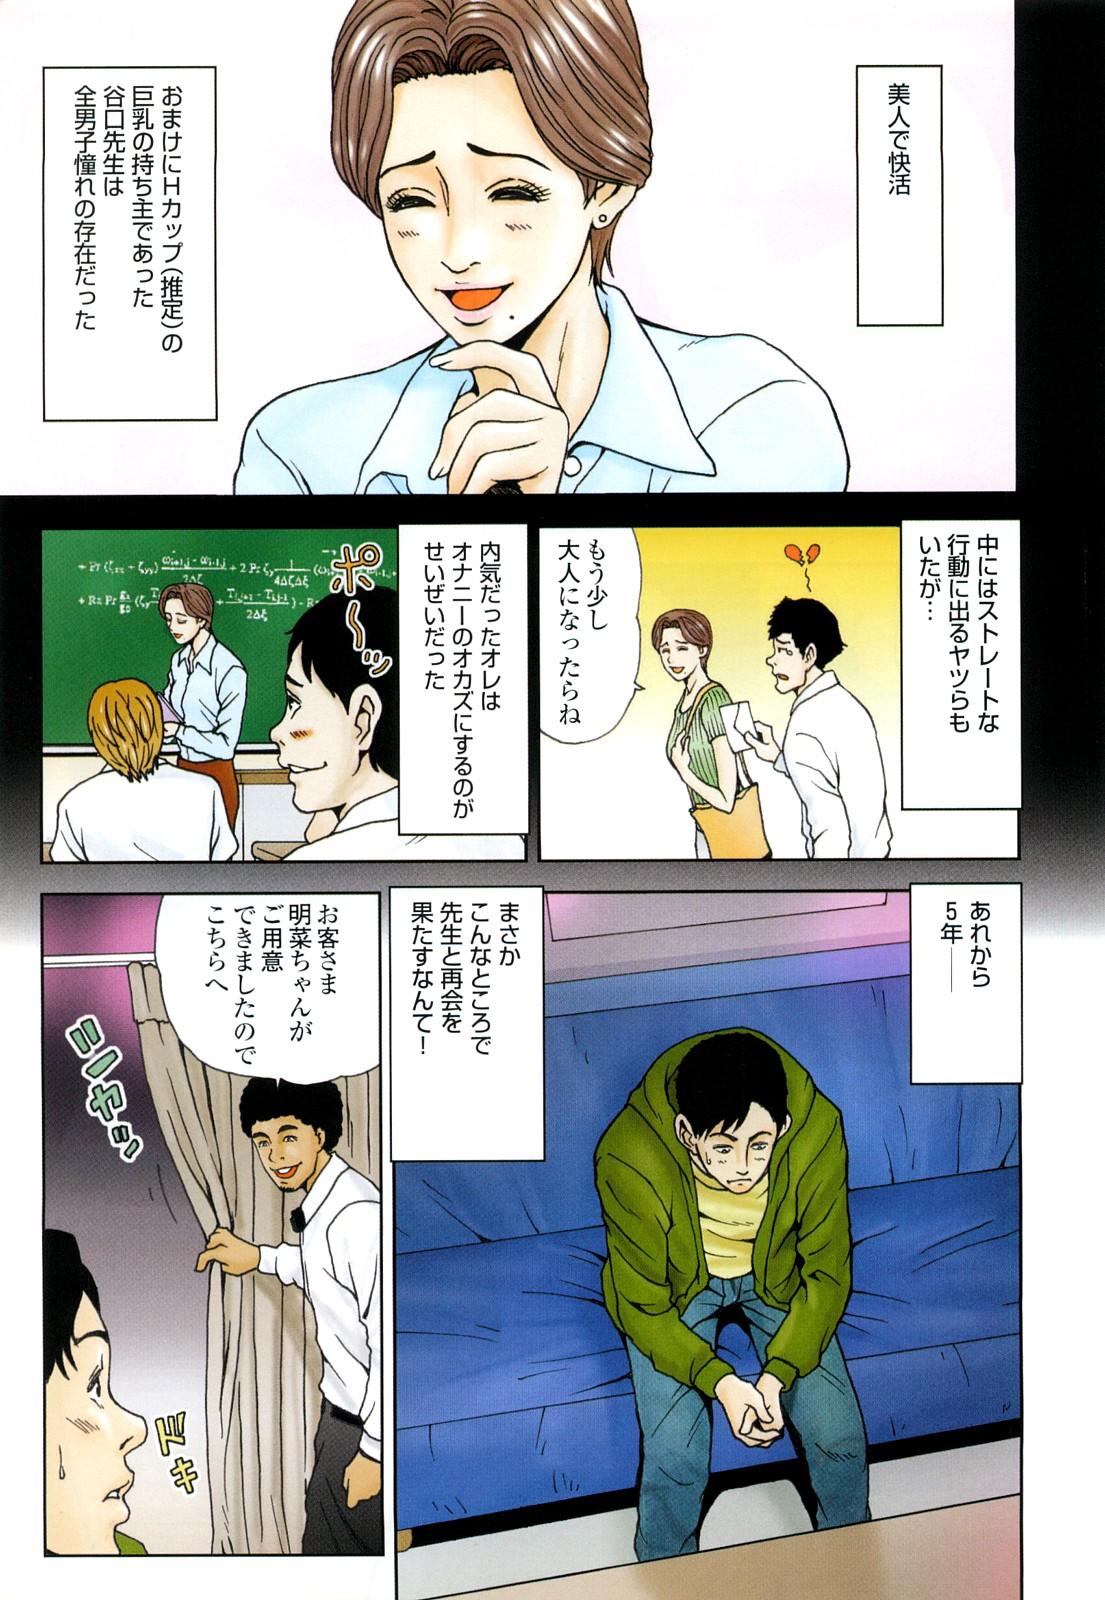 コミック裏モノJAPAN Vol.18 今井のりたつスペシャル号 12